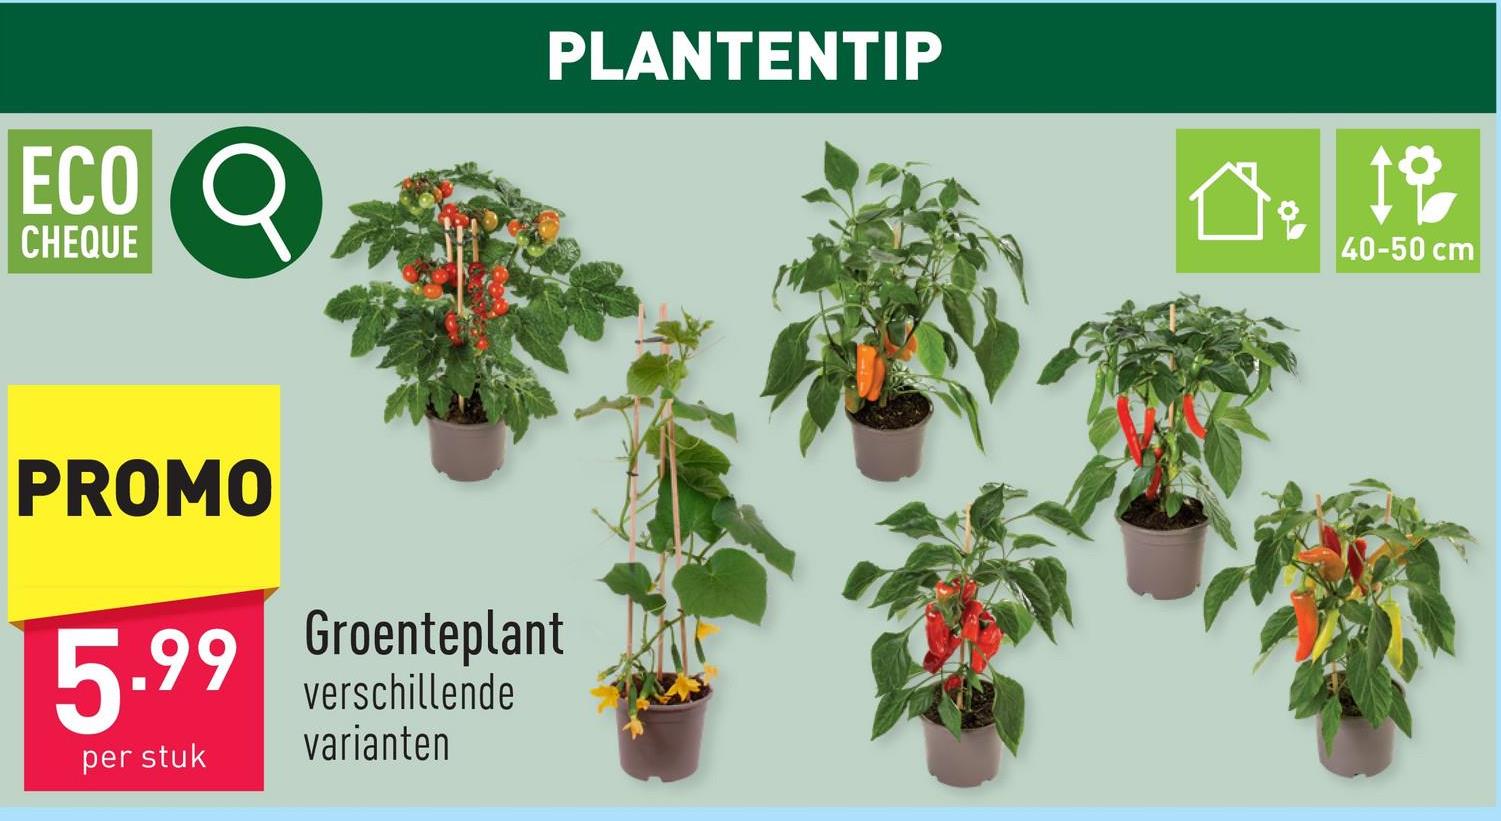 Groenteplant keuze uit verschillende variantenbinnen- of buitenplantplanthoogte: 40-50 cmdiameter pot: 14 cmhalfschaduw2 x per week water geven